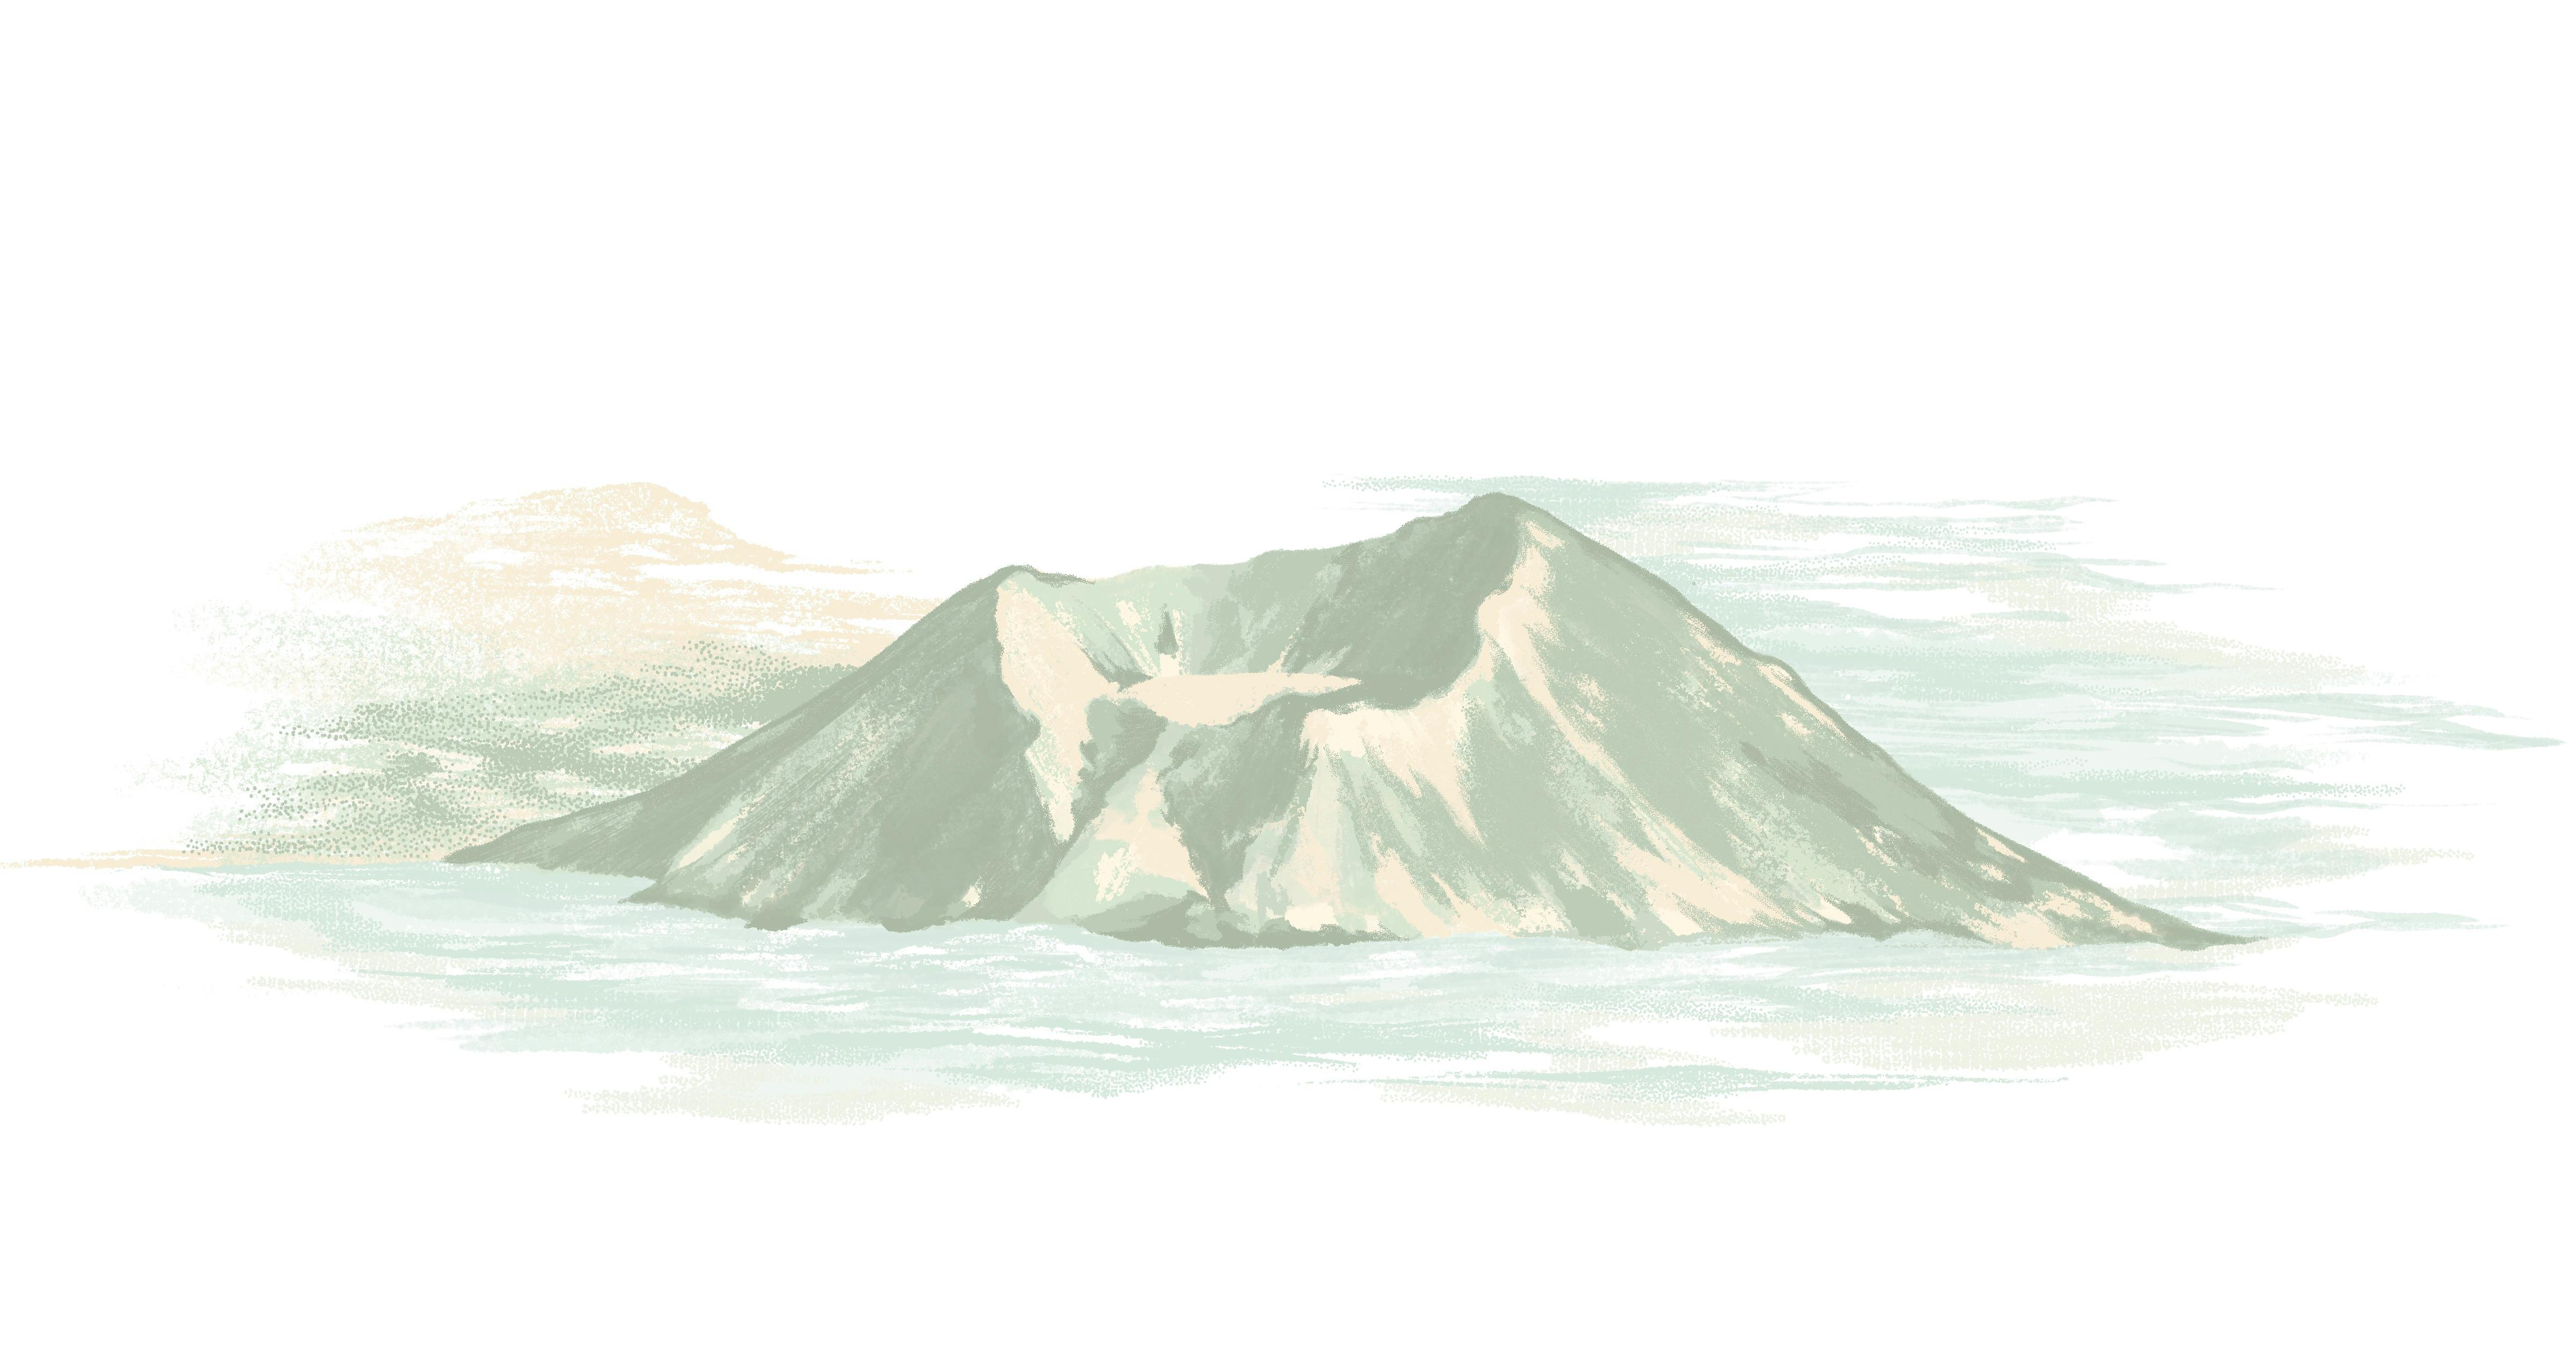 ARC - Illustrations - Taal Volcano.jpg